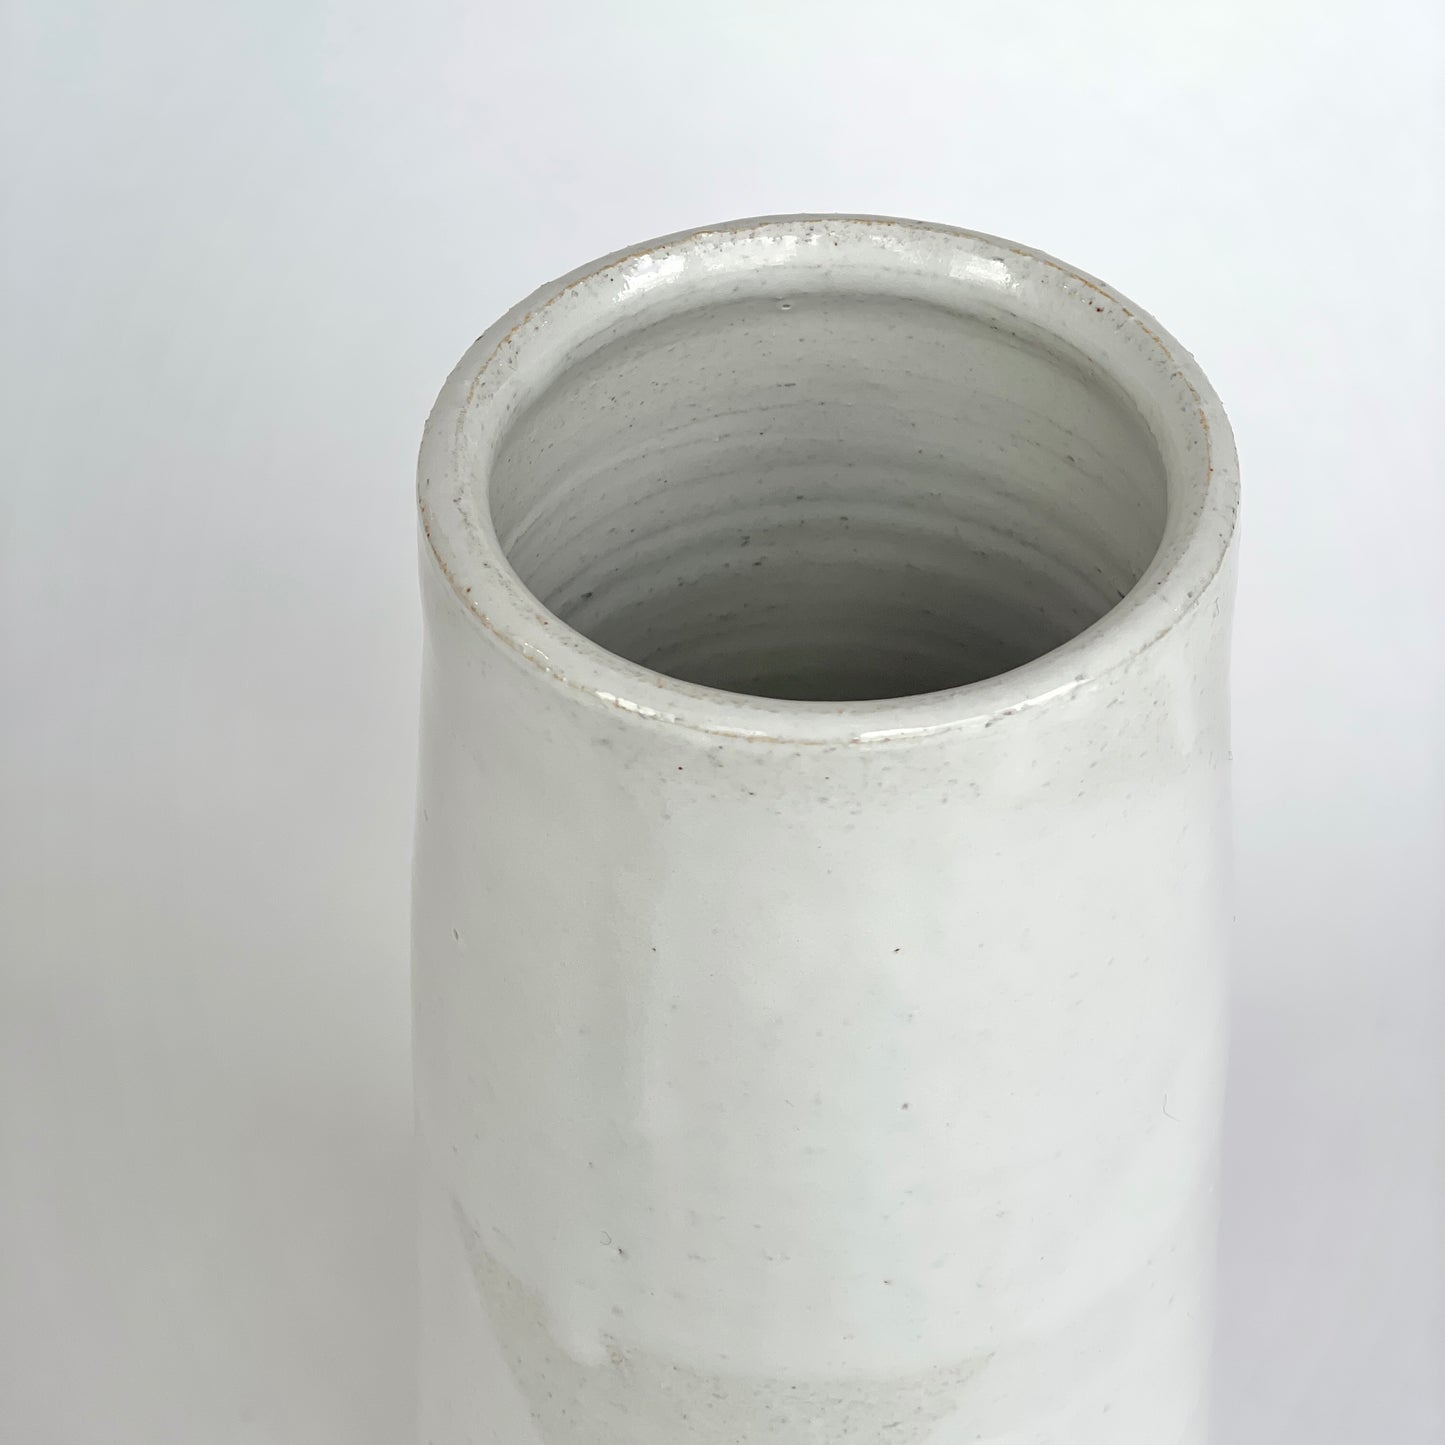 Southwick Cylindrical Vase